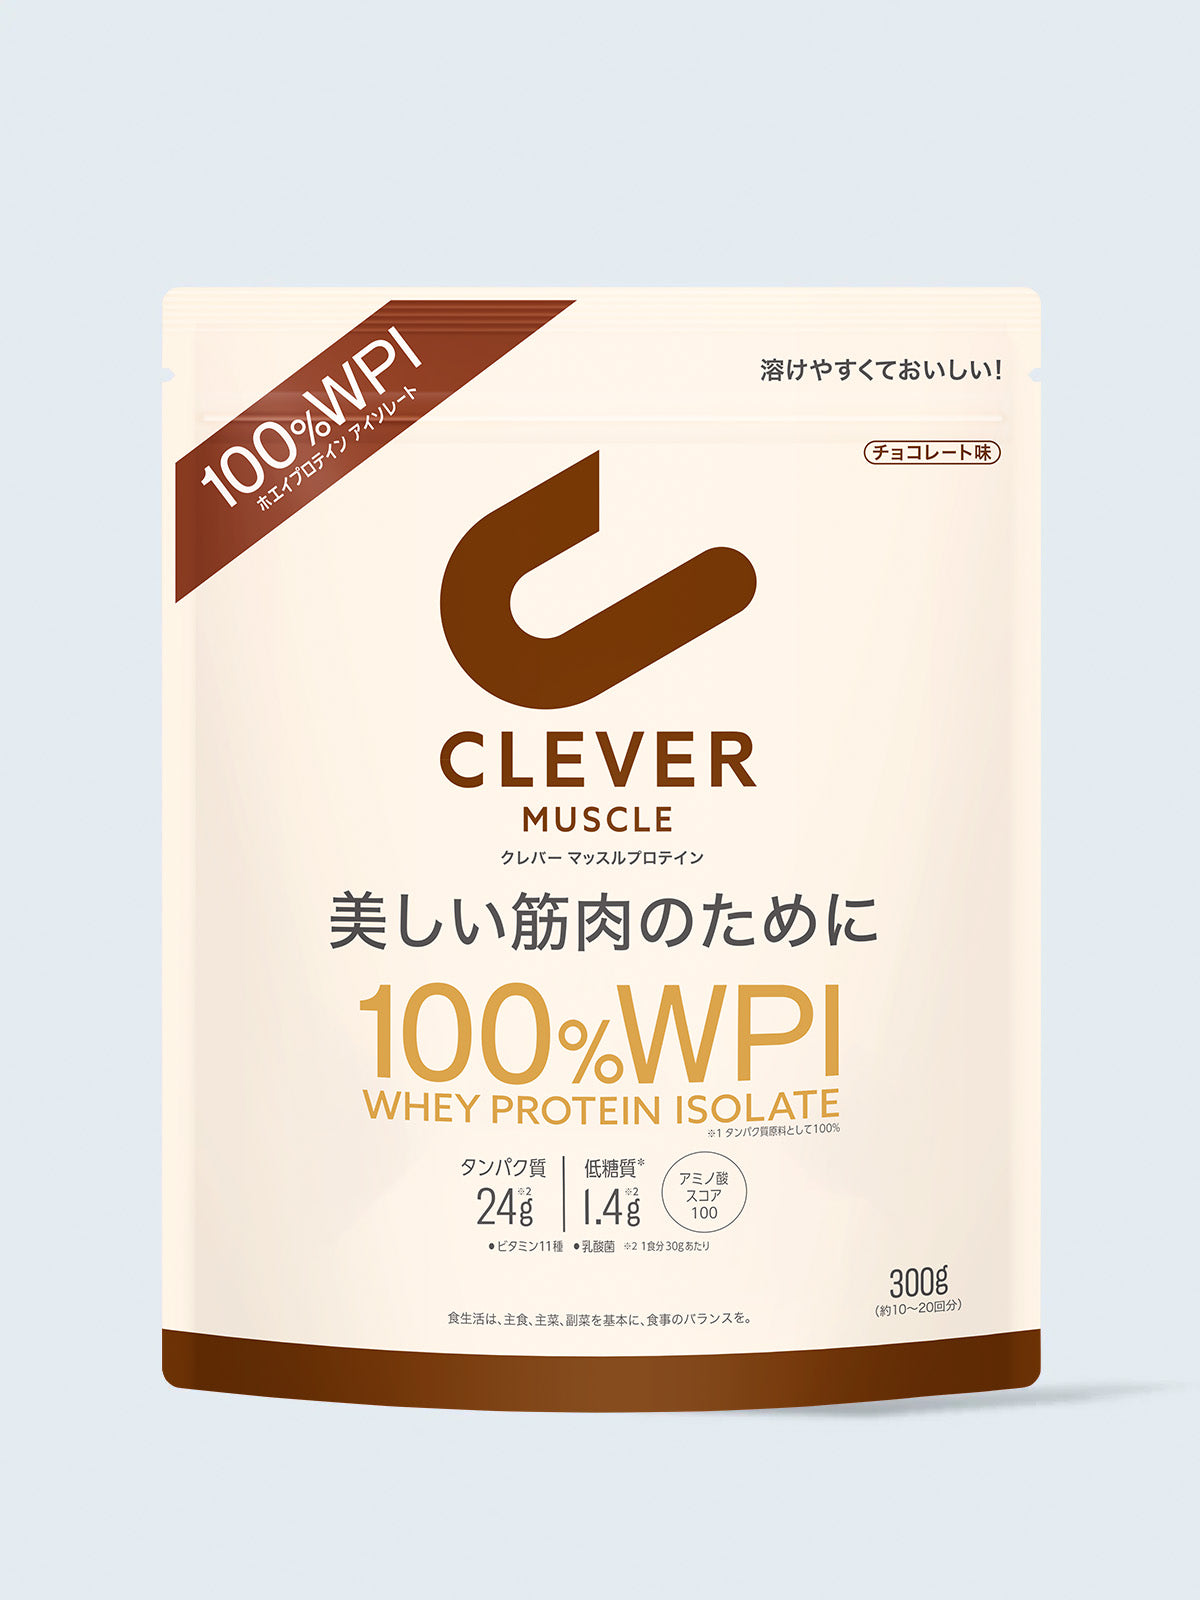 300g プロテイン [美しい筋肉のために 100%WPI] チョコレート味 クレバー マッスル